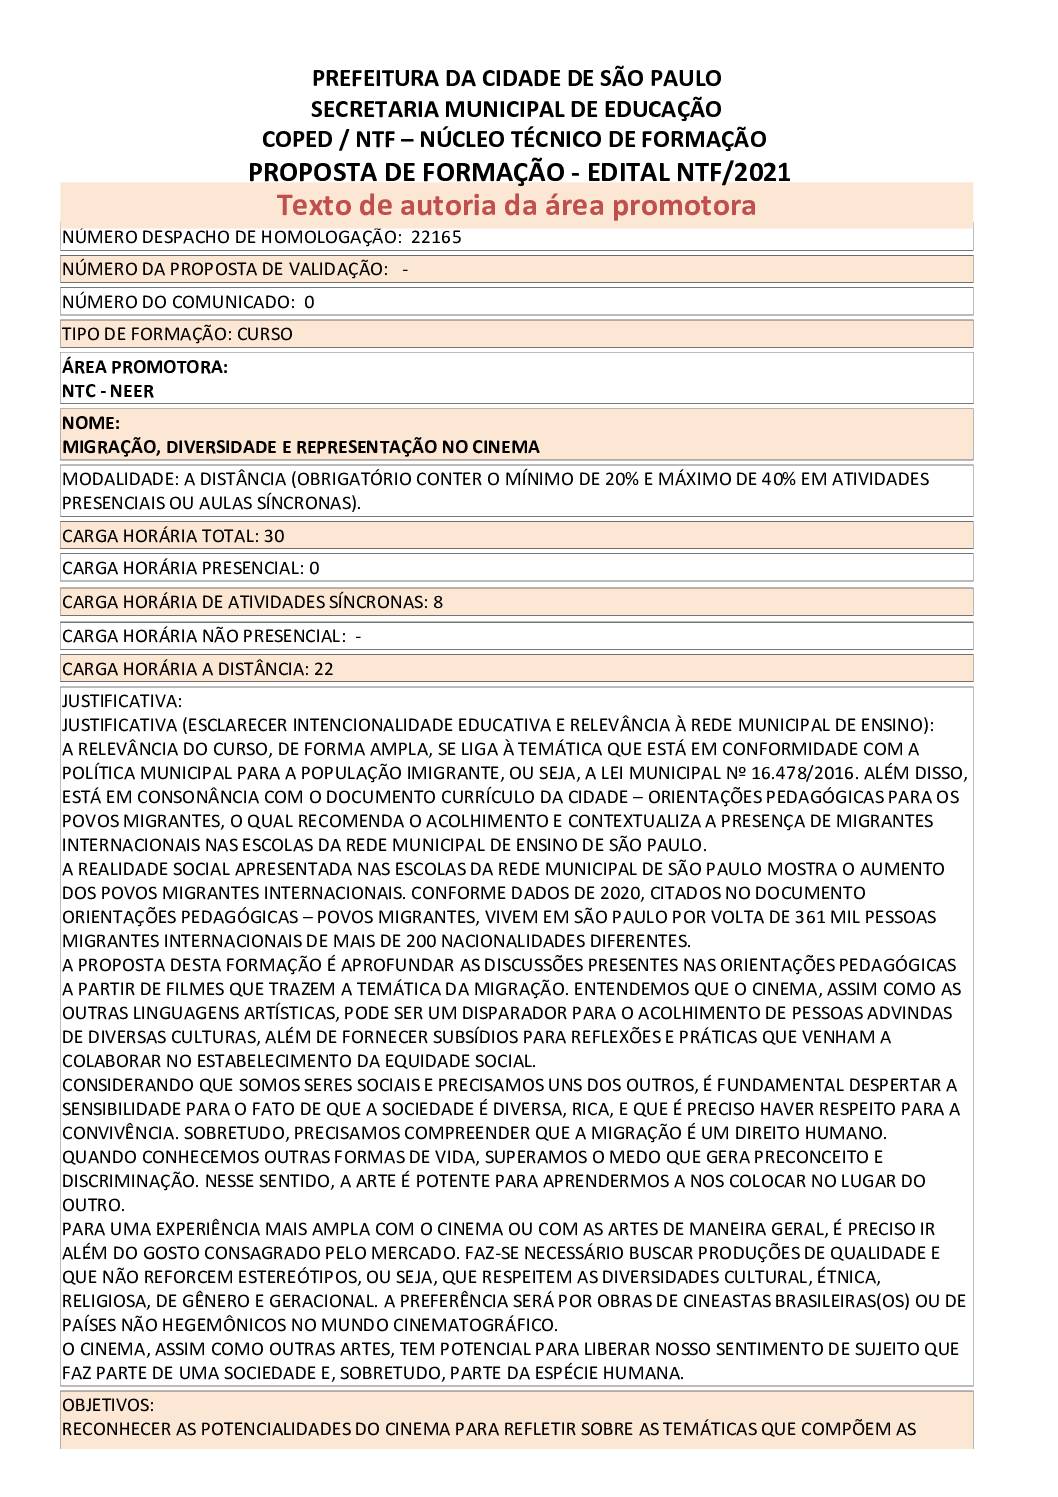 PDF com informações sobre o curso: MIGRAÇÃO, DIVERSIDADE E REPRESENTAÇÃO NO CINEMA